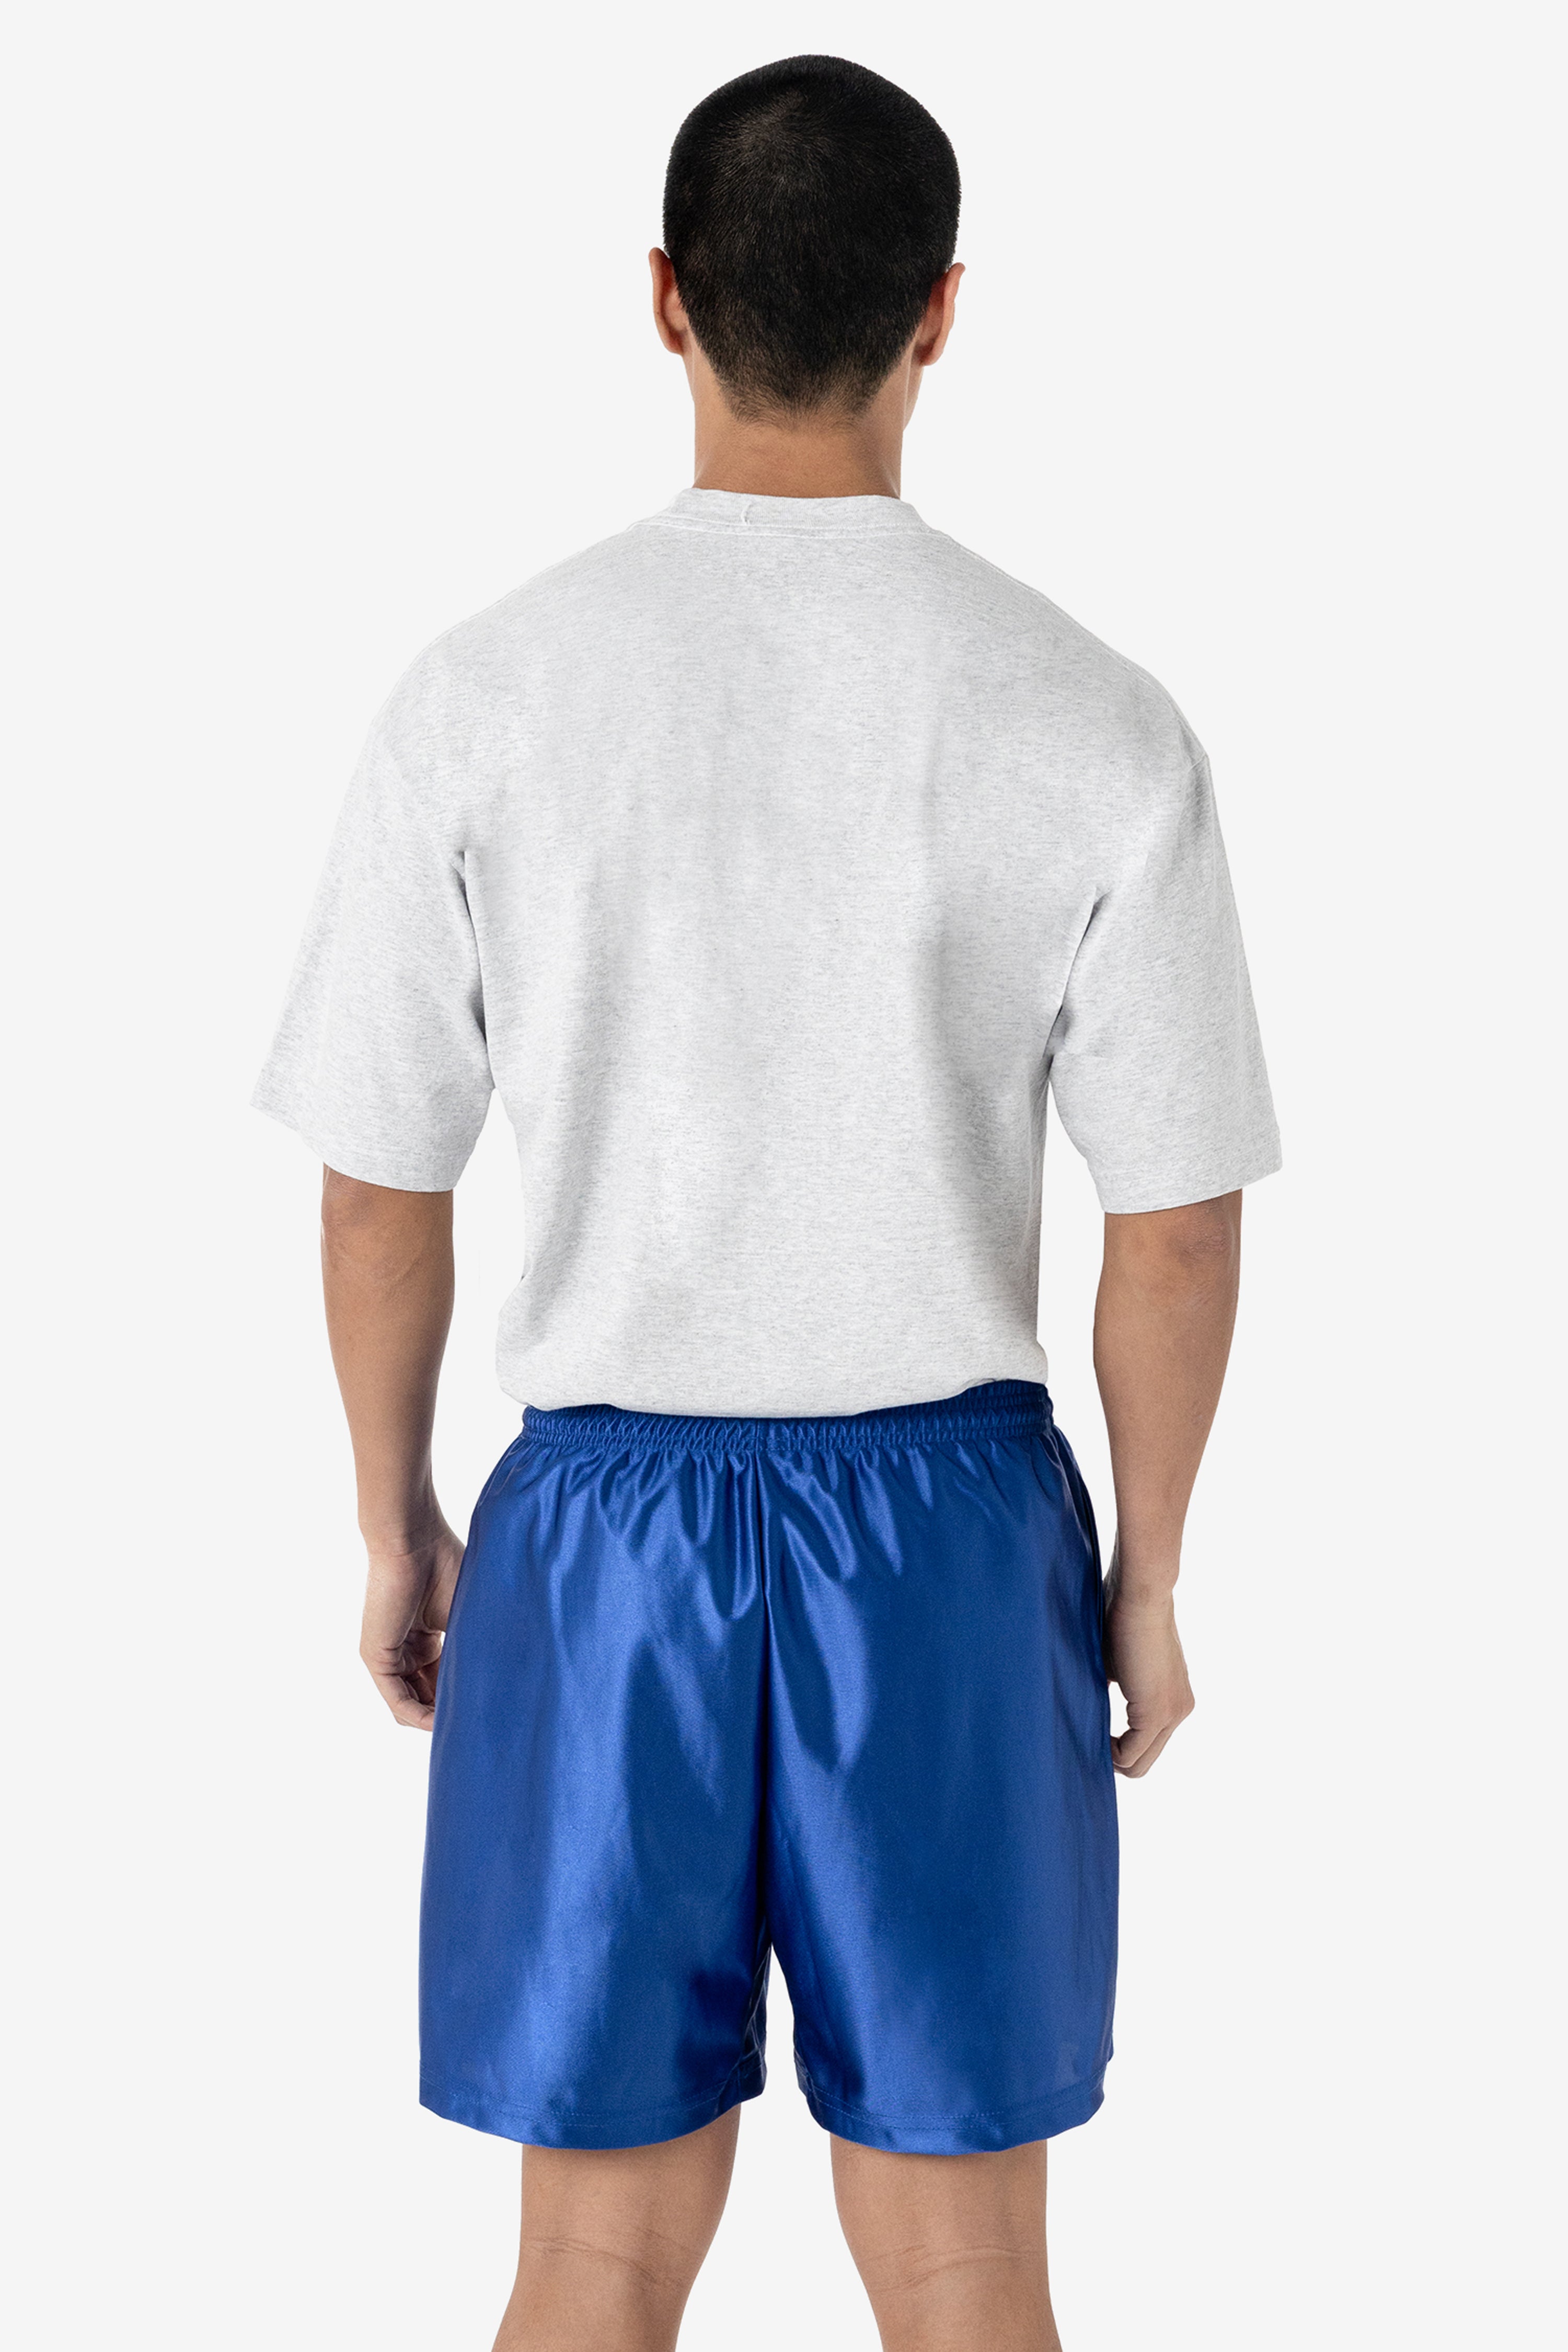 Dazzle Long Shorts Pure Cotton DLS-A (Navy Blue, X-Large) 